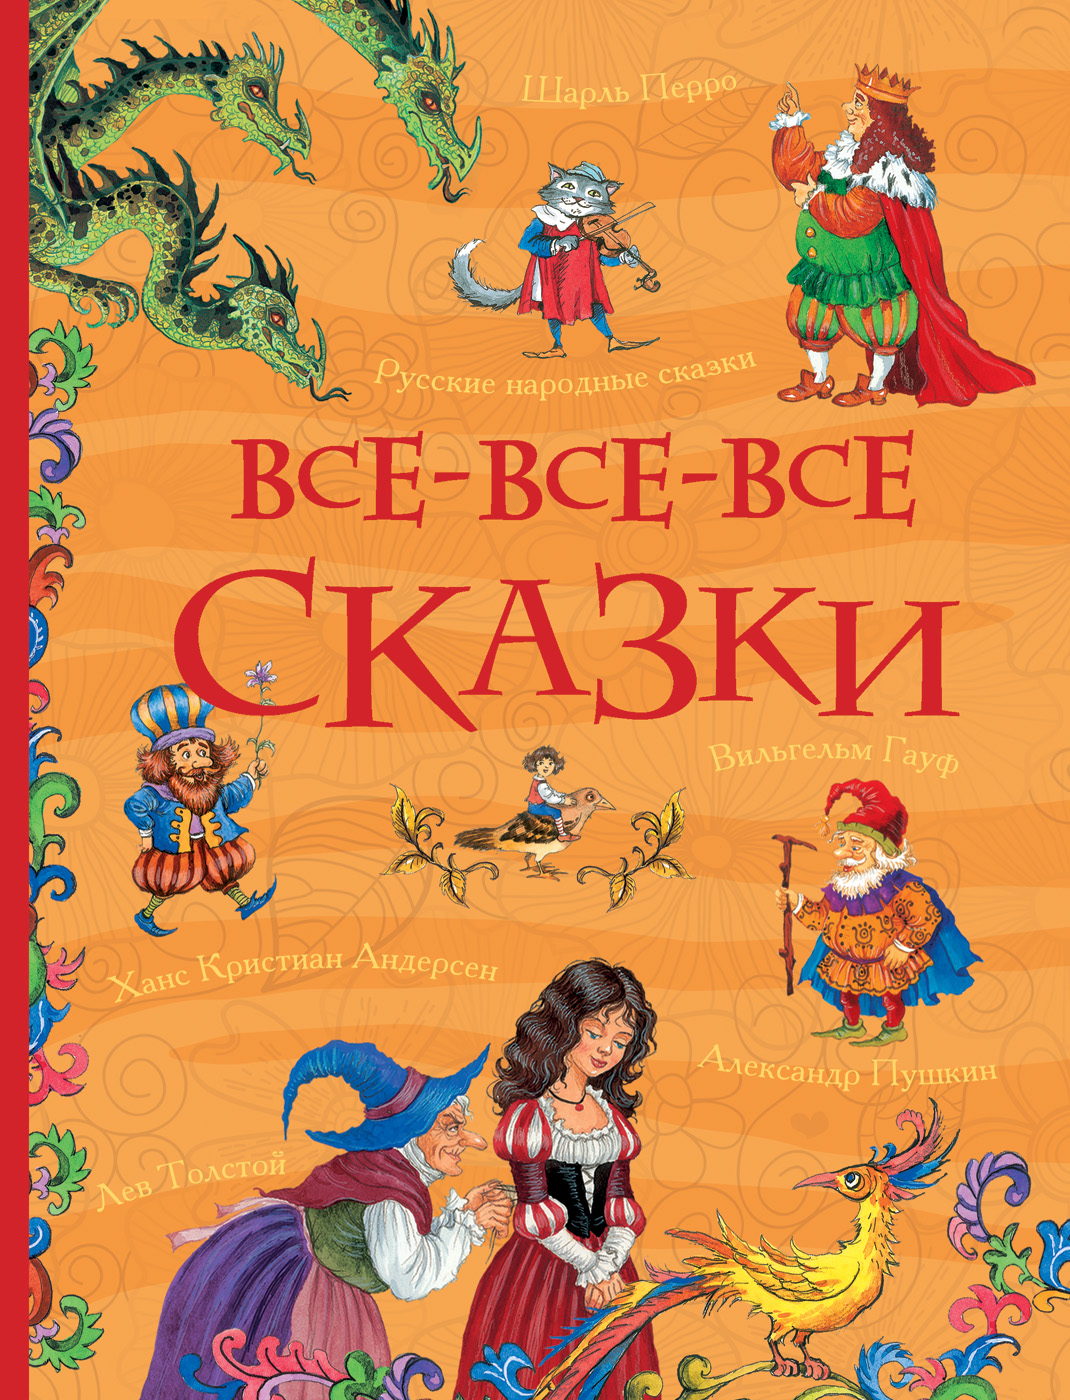 Книга 31348 "Все-все-все сказки"  (Все истории) Росмэн - Санкт-Петербург 